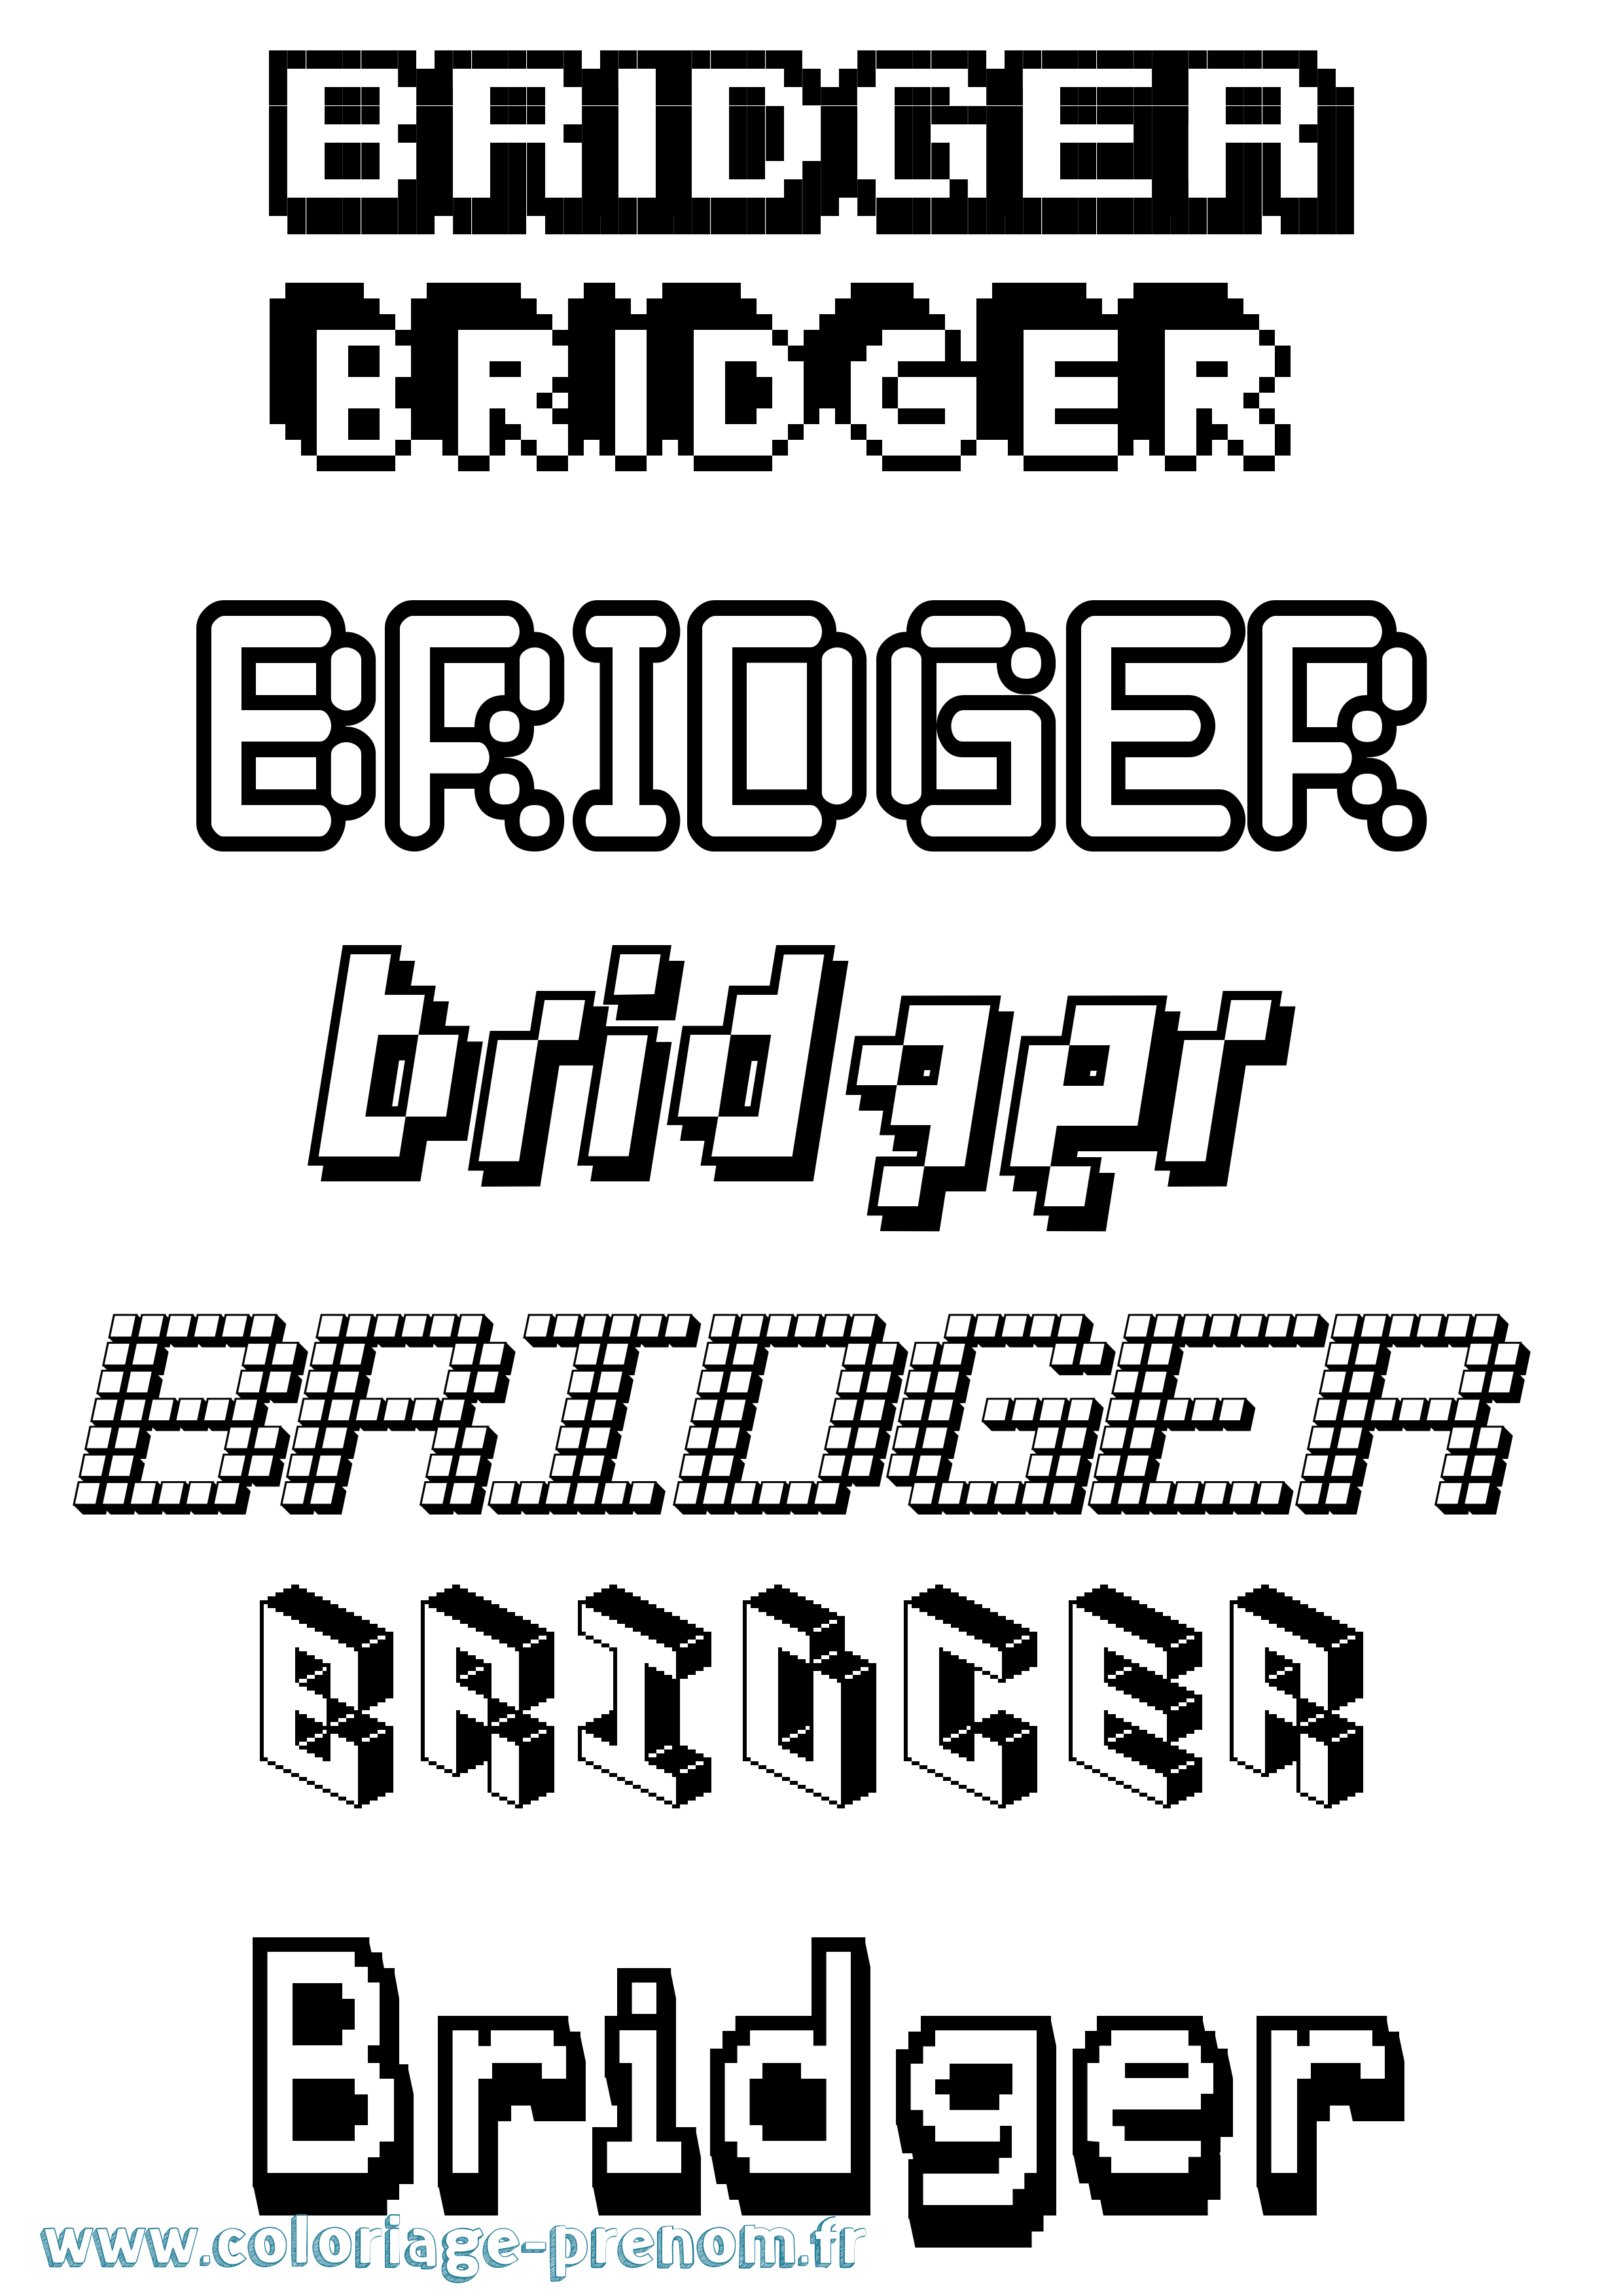 Coloriage prénom Bridger Pixel